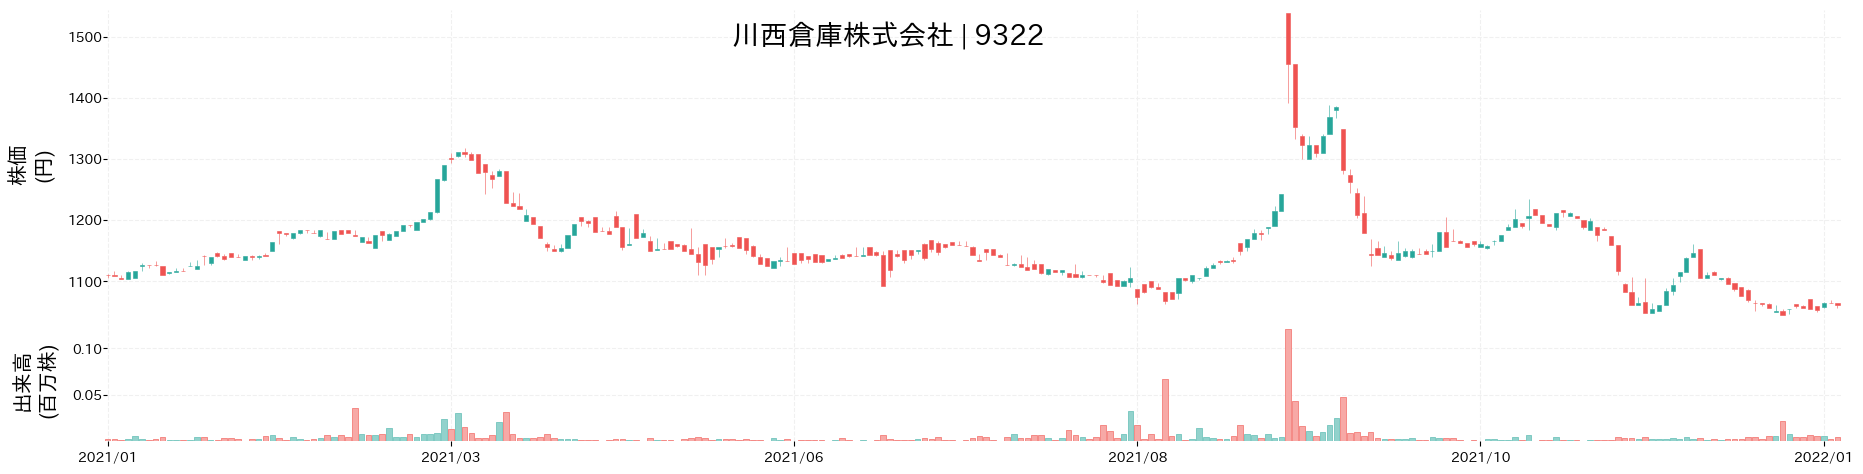 川西倉庫の株価推移(2021)